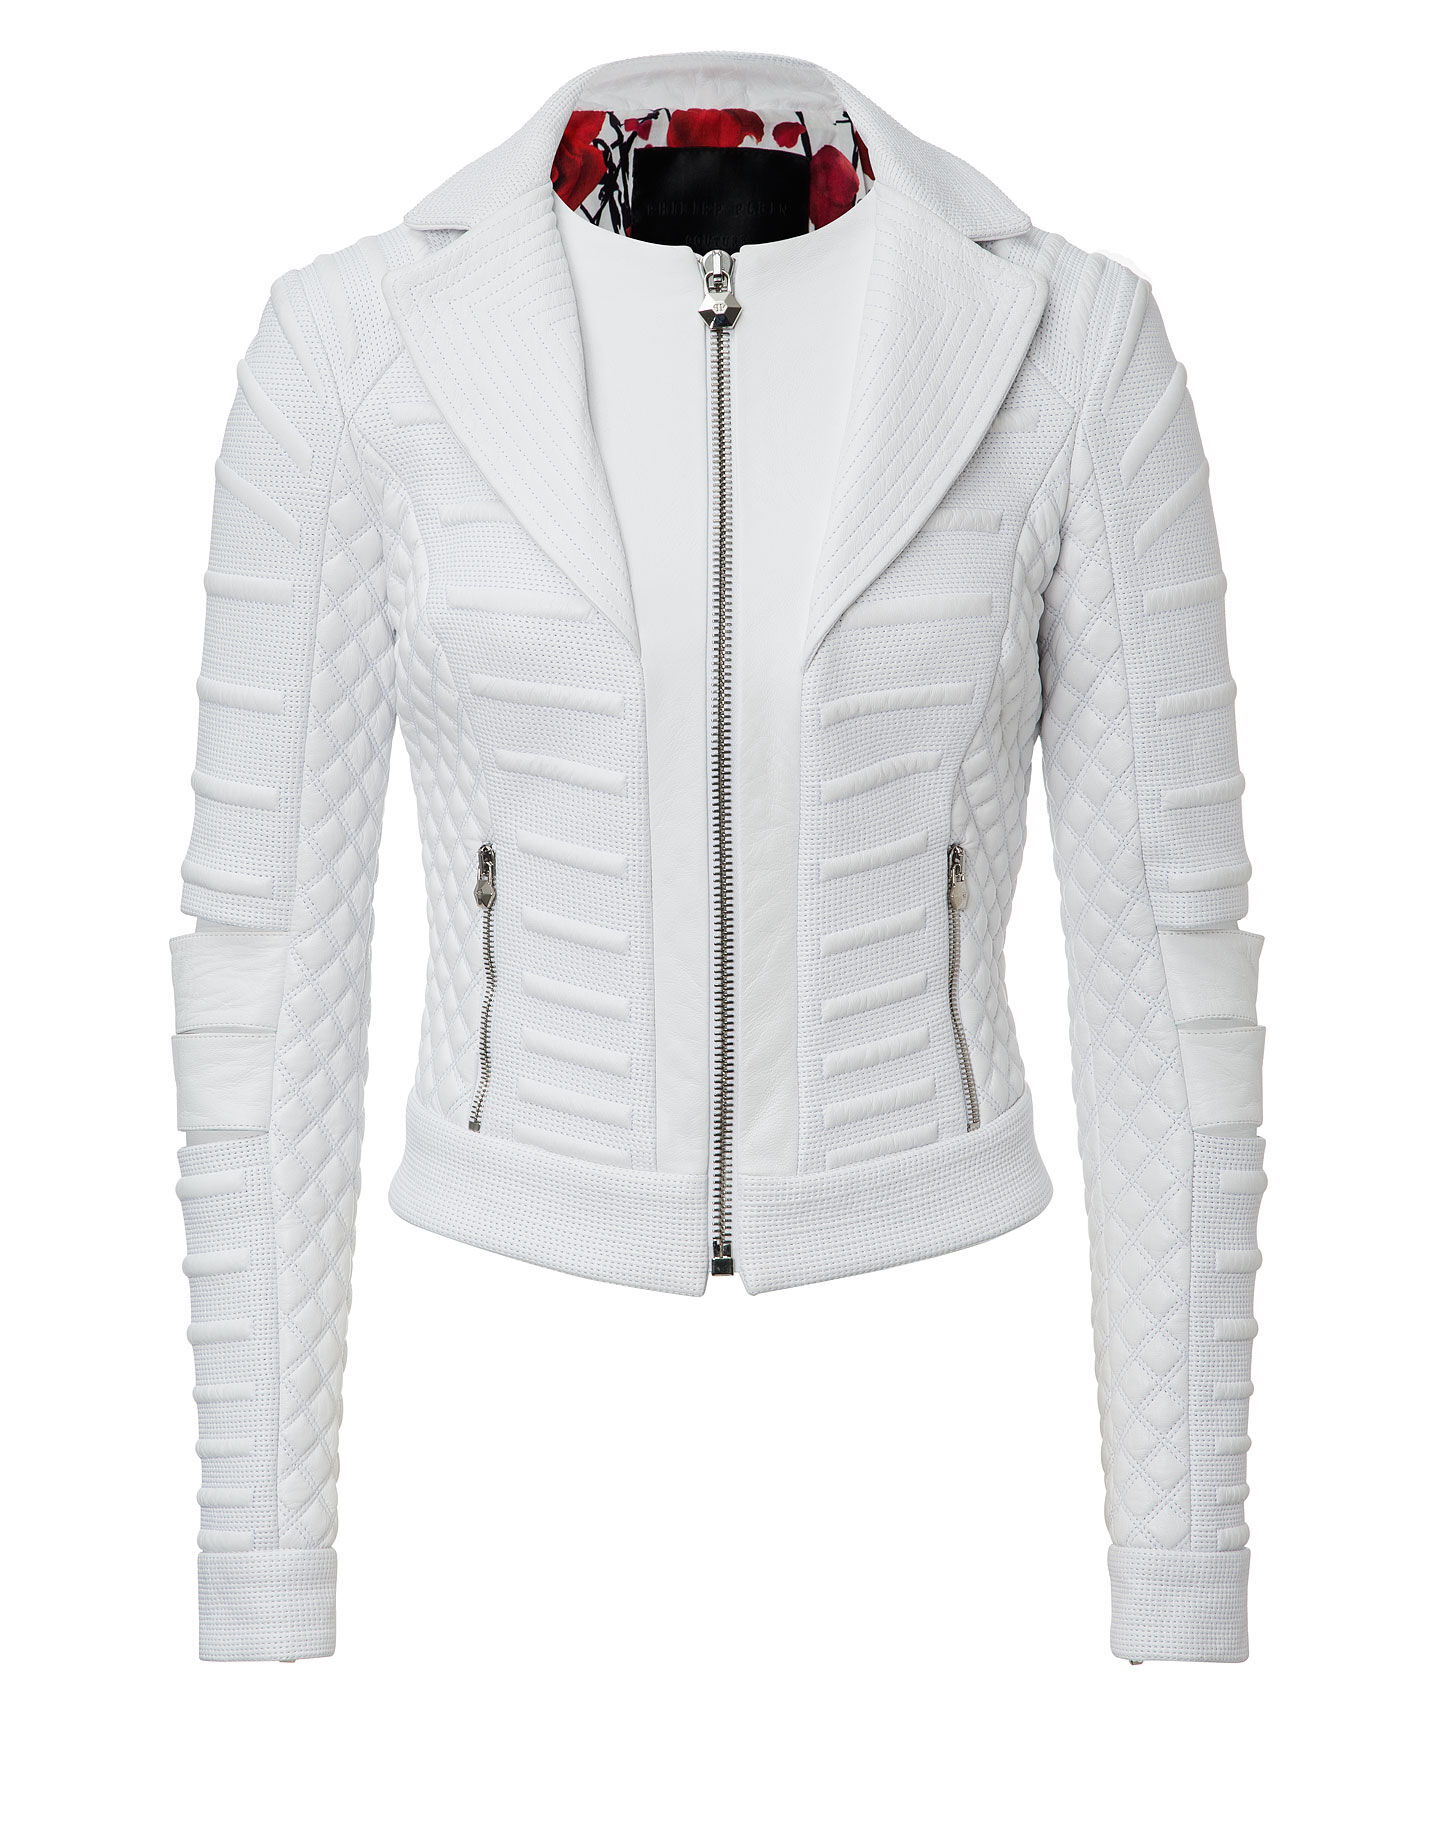 philipp plein white jacket